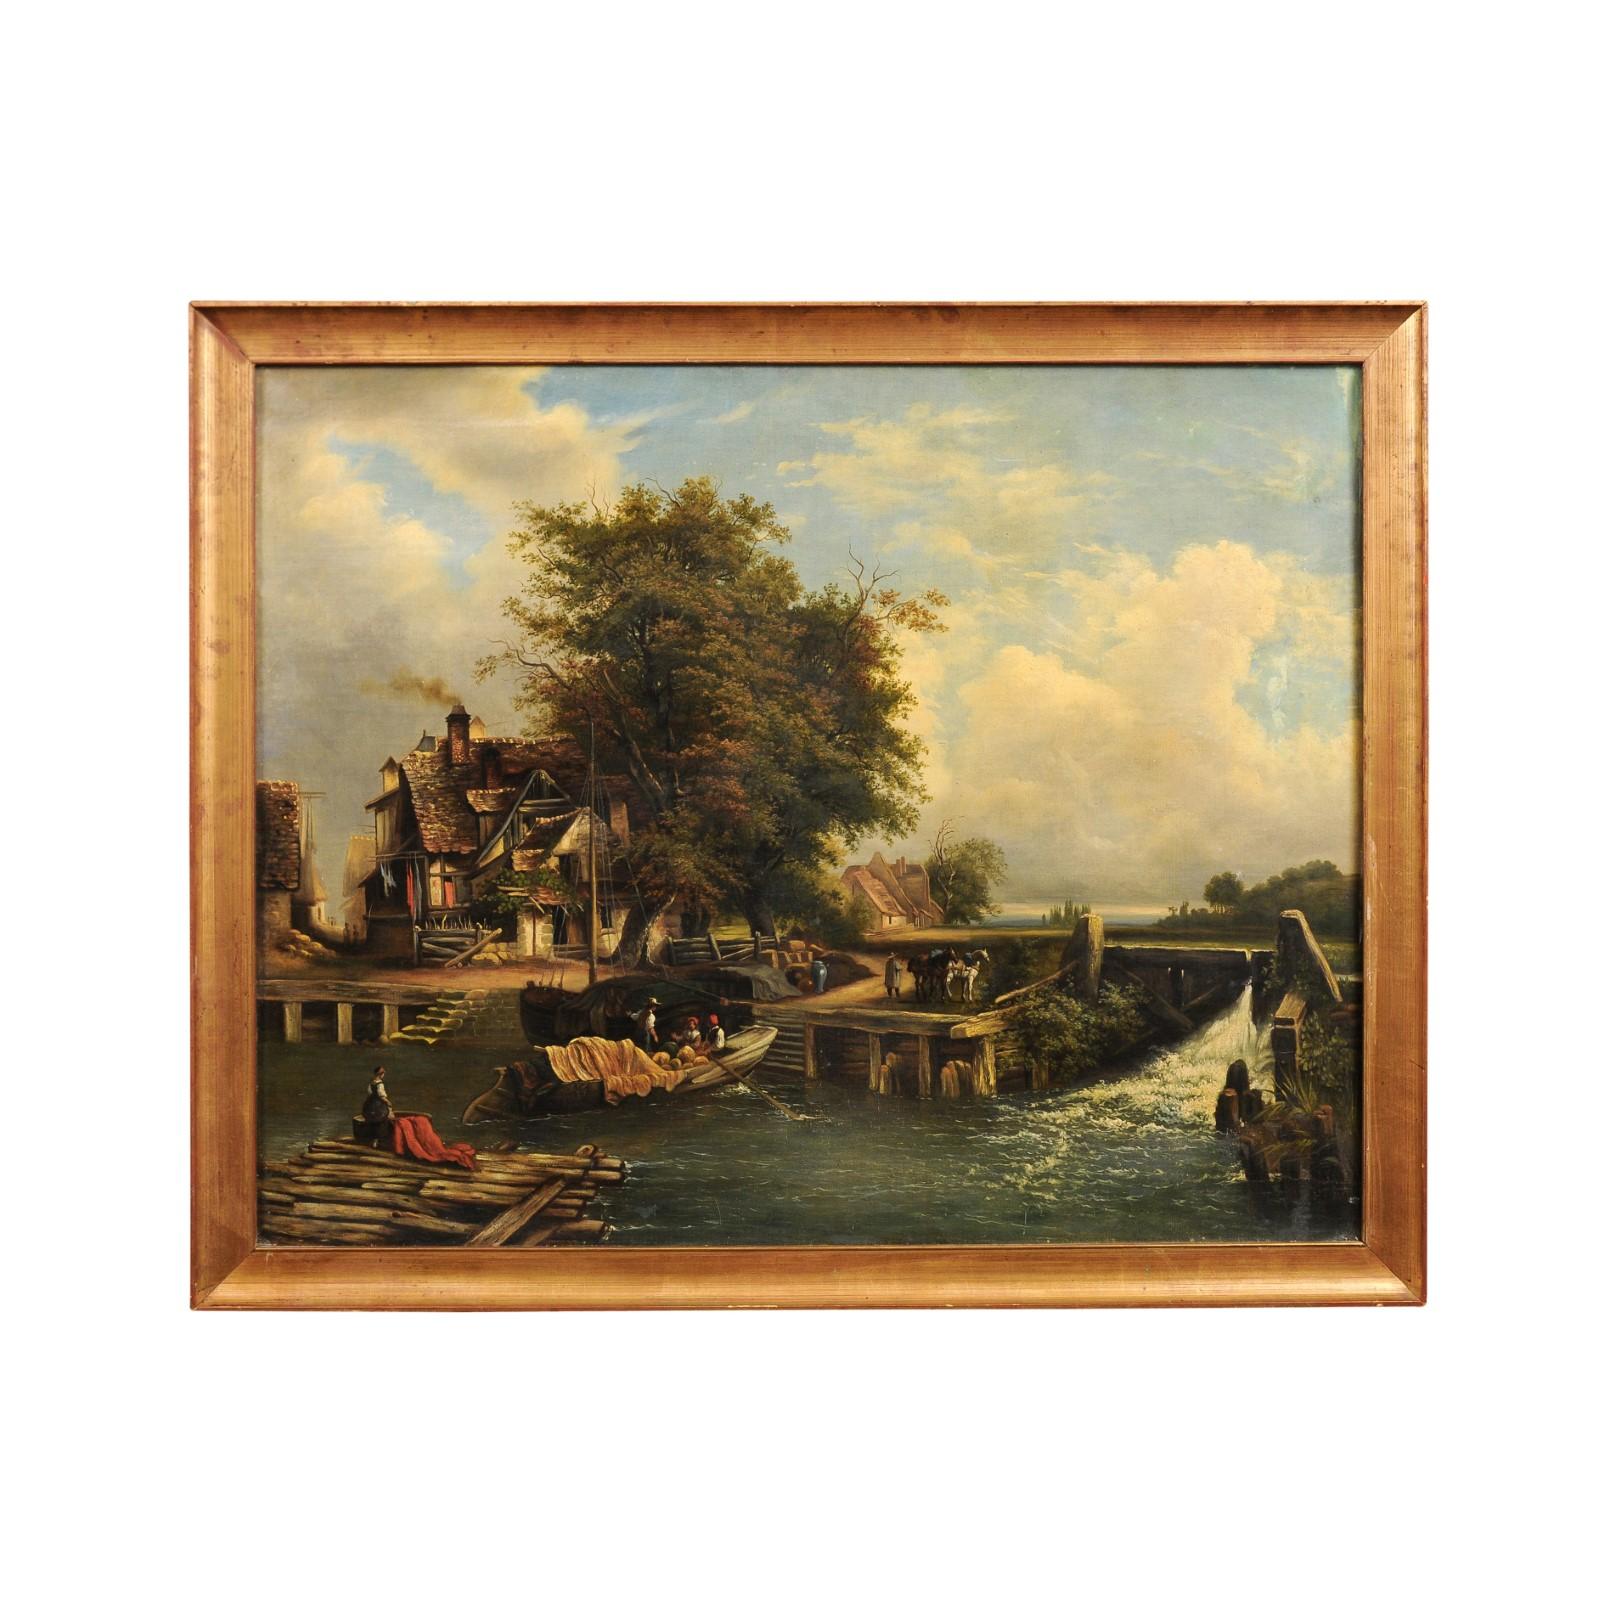 Ein französisches Landschaftsgemälde in Öl auf Leinwand aus dem 19. Jahrhundert, das eine Szene aus dem Alltagsleben in einem Dorf zeigt. Das im 19. Jahrhundert in Frankreich entstandene querformatige Gemälde in Öl auf Leinwand zeigt eine